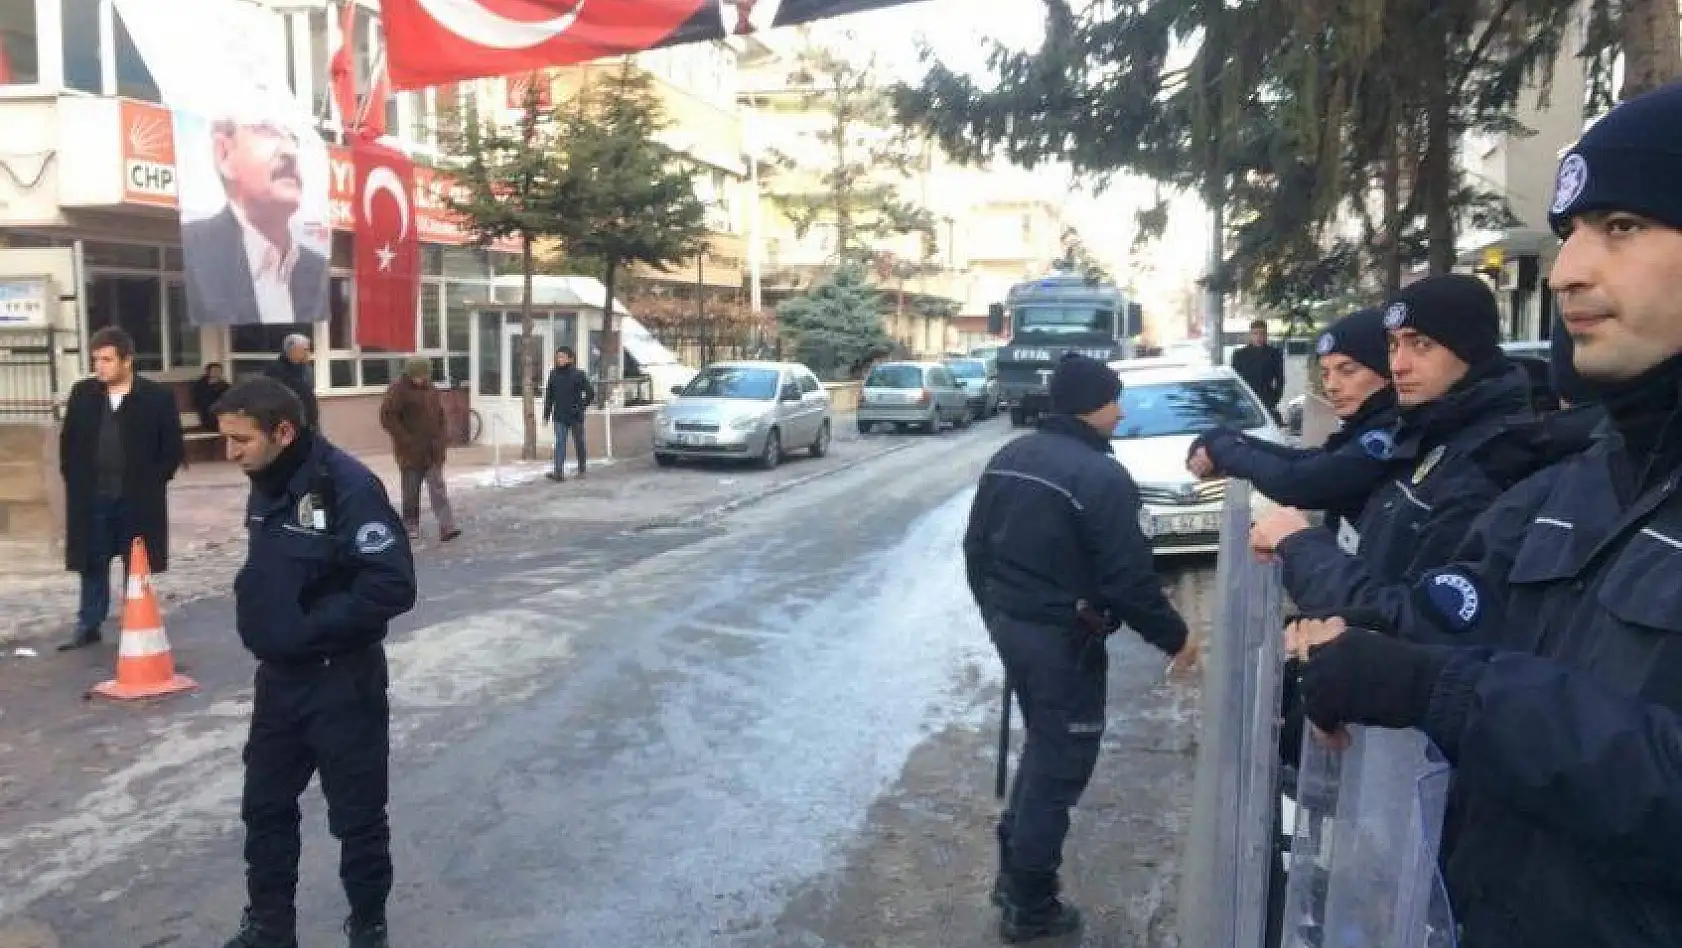 CHP İl Başkanı Keskin, 'Saldırıyı gerçekleştirenler ile provokatörler aynı kefededir'